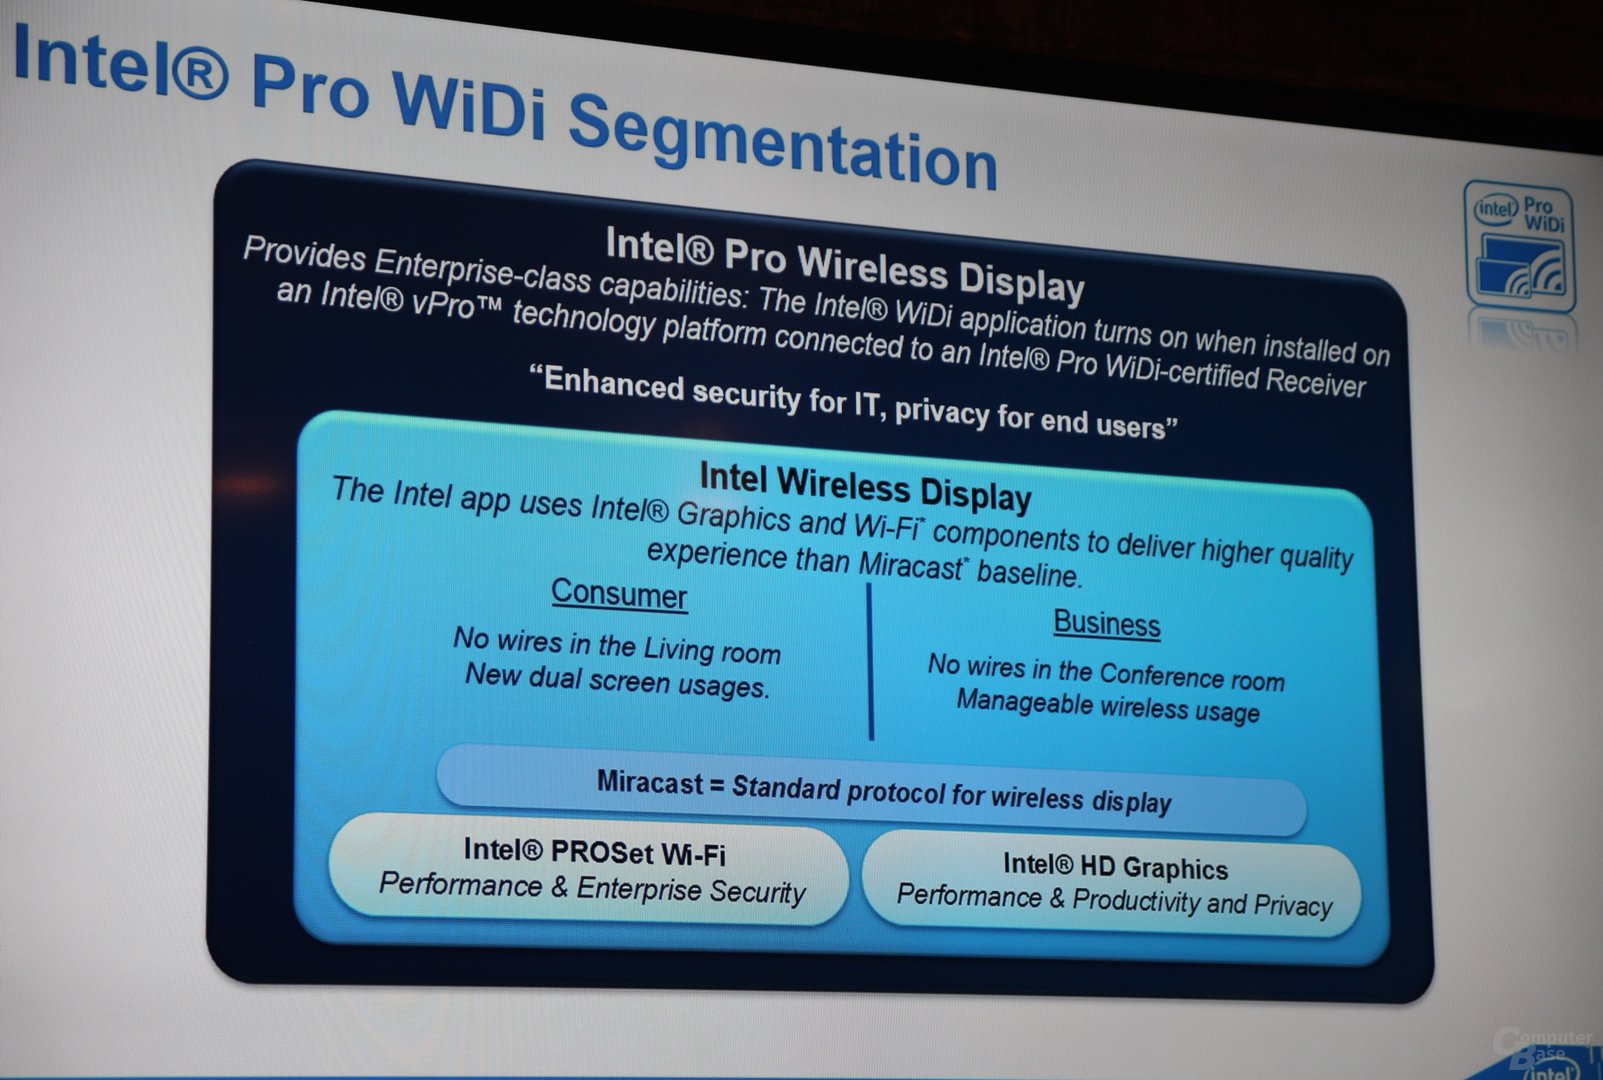 Intel Pro WiDi